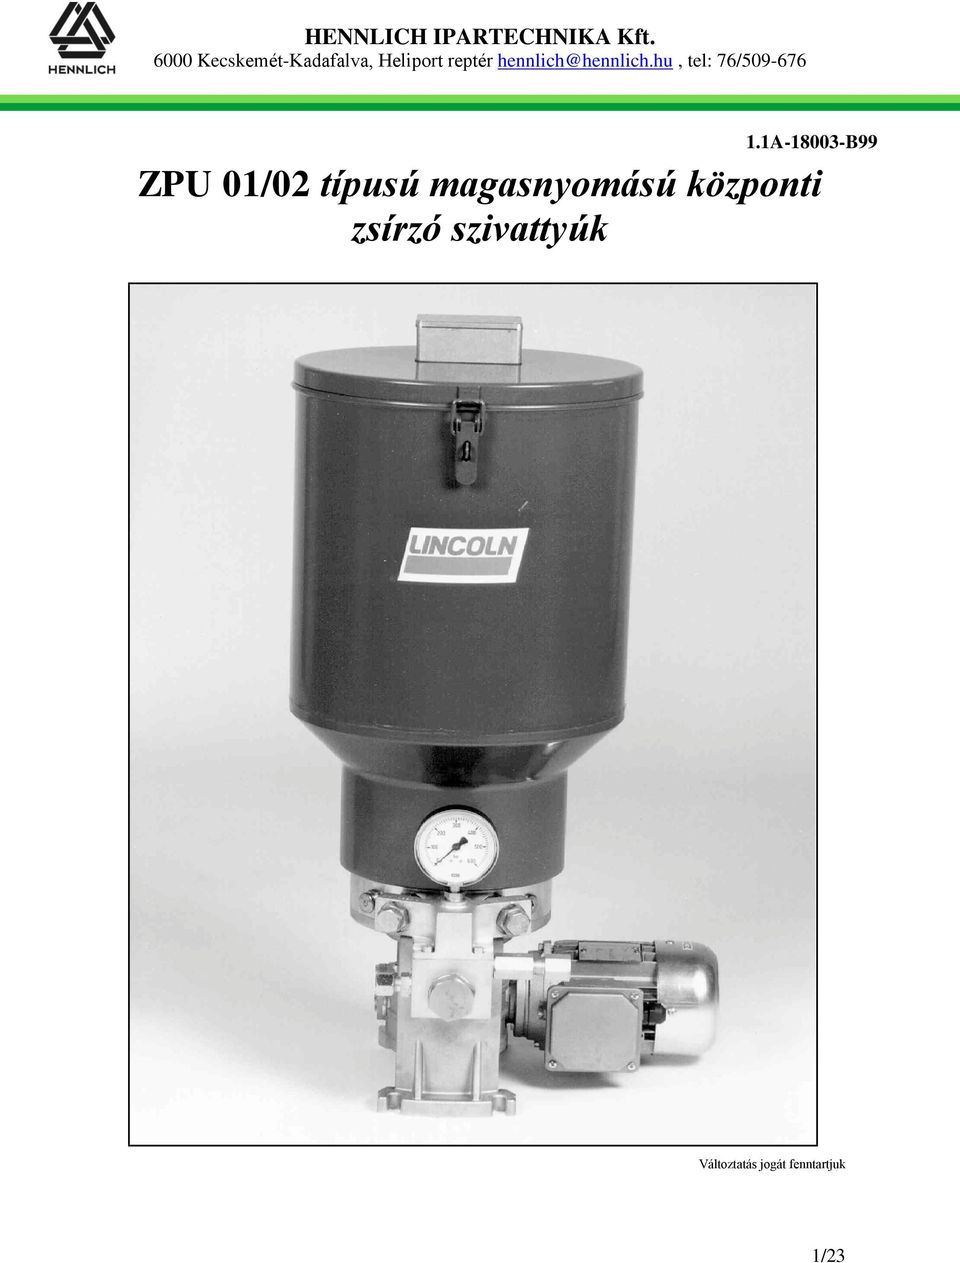 ZPU 01/02 típusú magasnyomású központi zsírzó szivattyúk - PDF Free Download